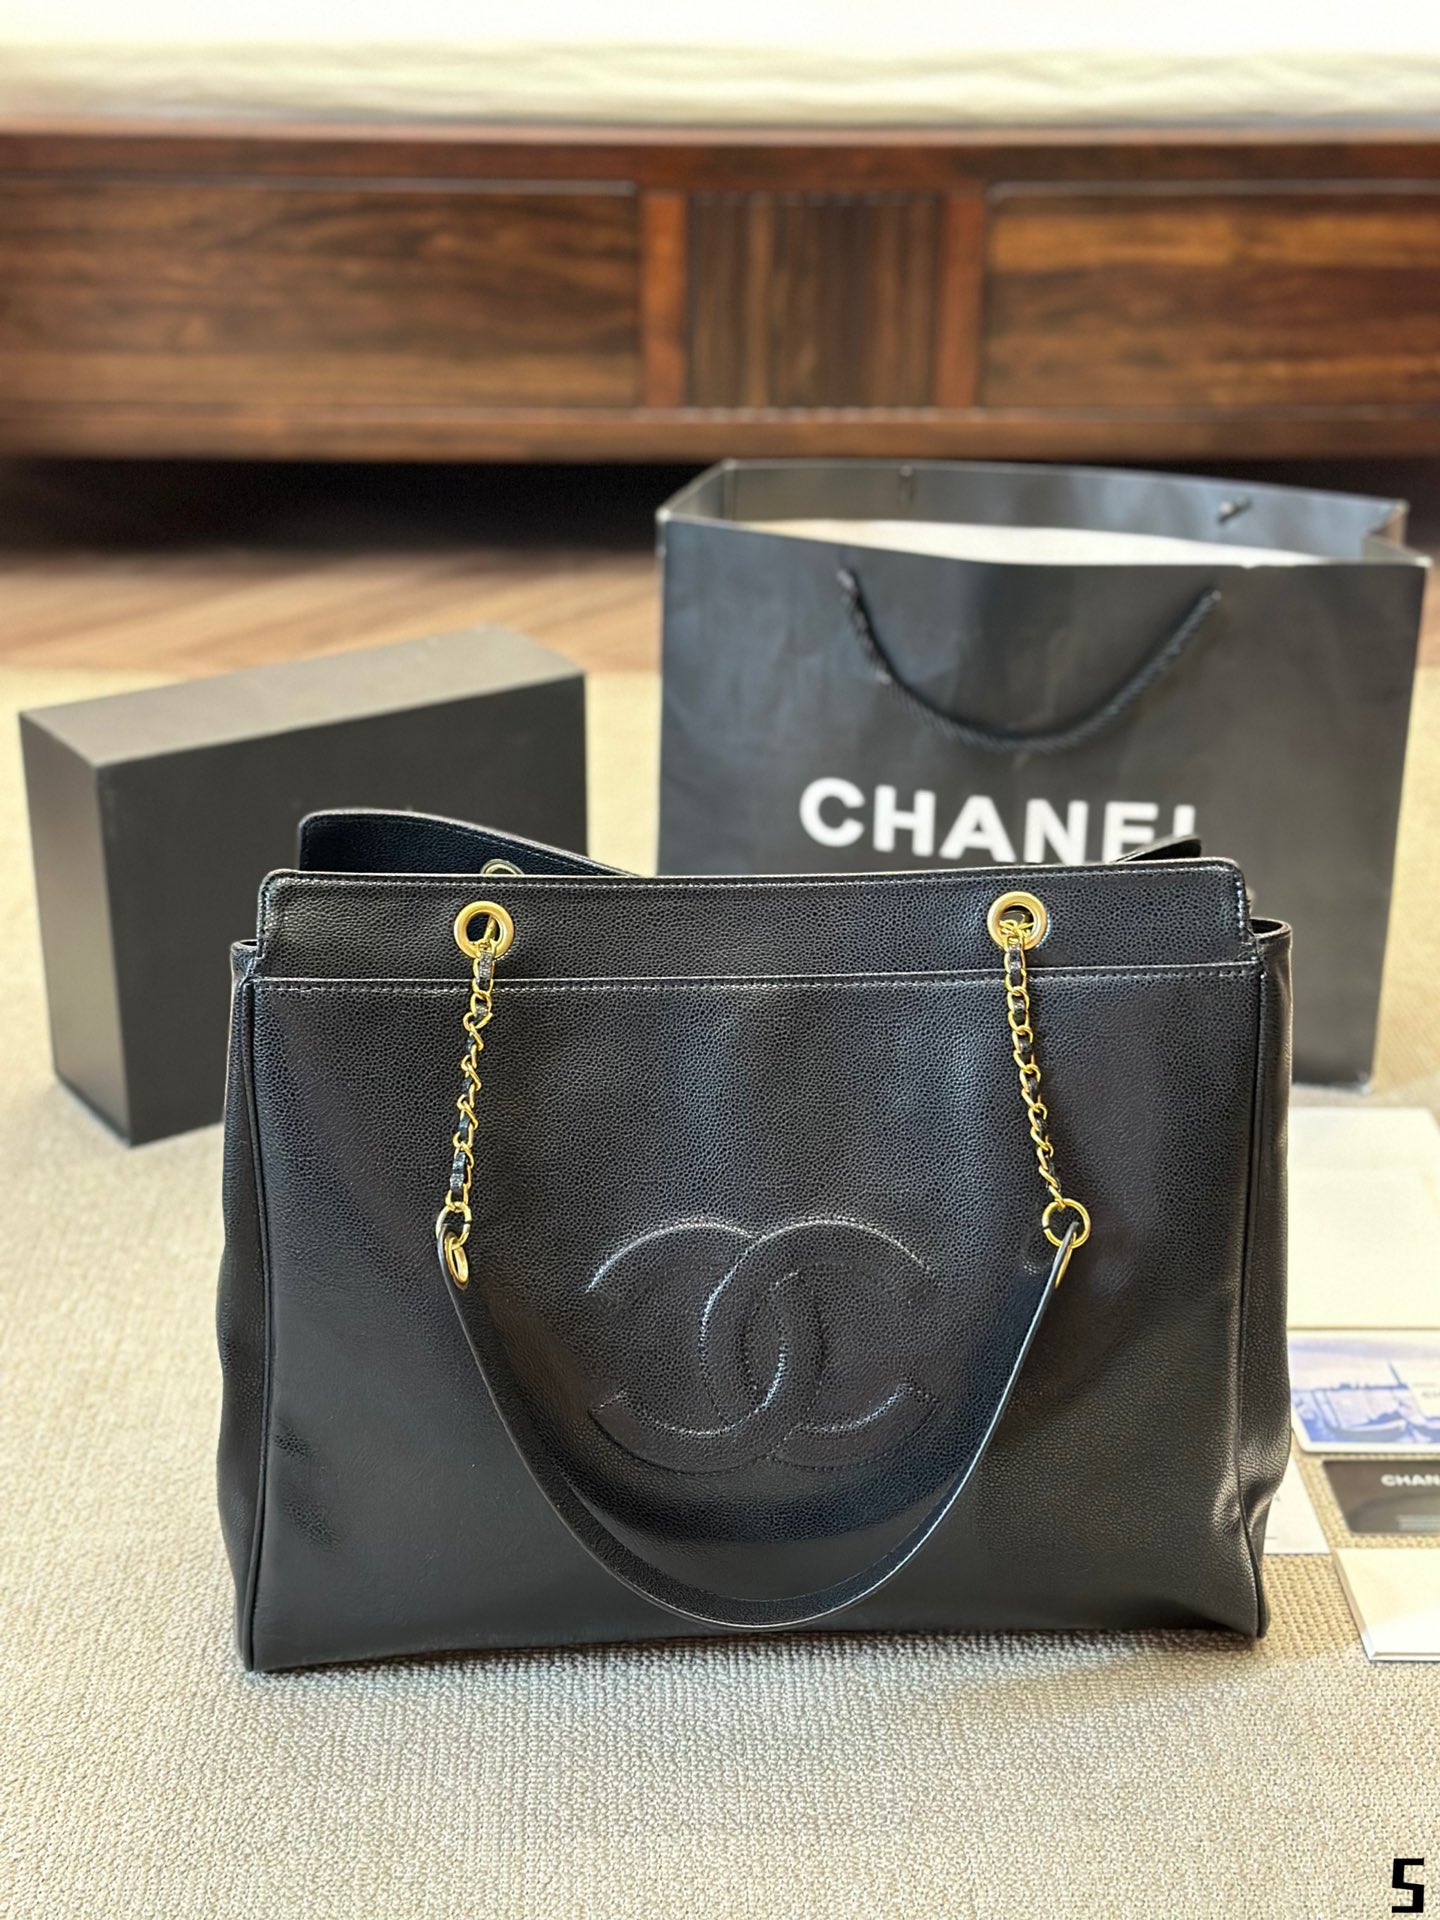 Chanel Taschen Tragetaschen Schwarz Weiß Fashion